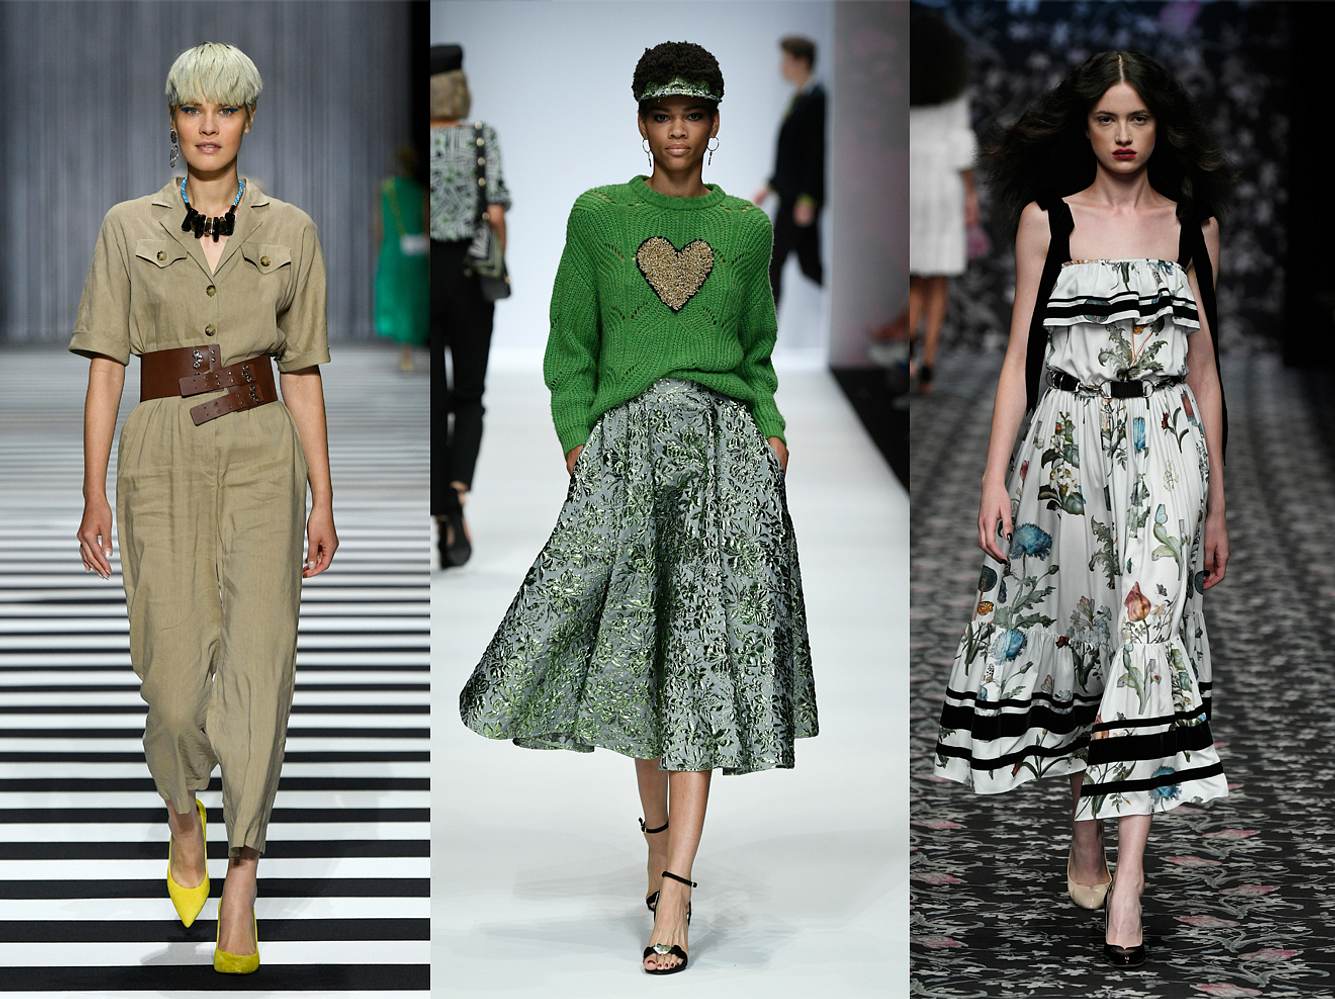 Letzte Woche hieß es: Berlin Fashion Week! Hier kommen die schönsten Trends für die Frühlings-/Sommersaison 2020.